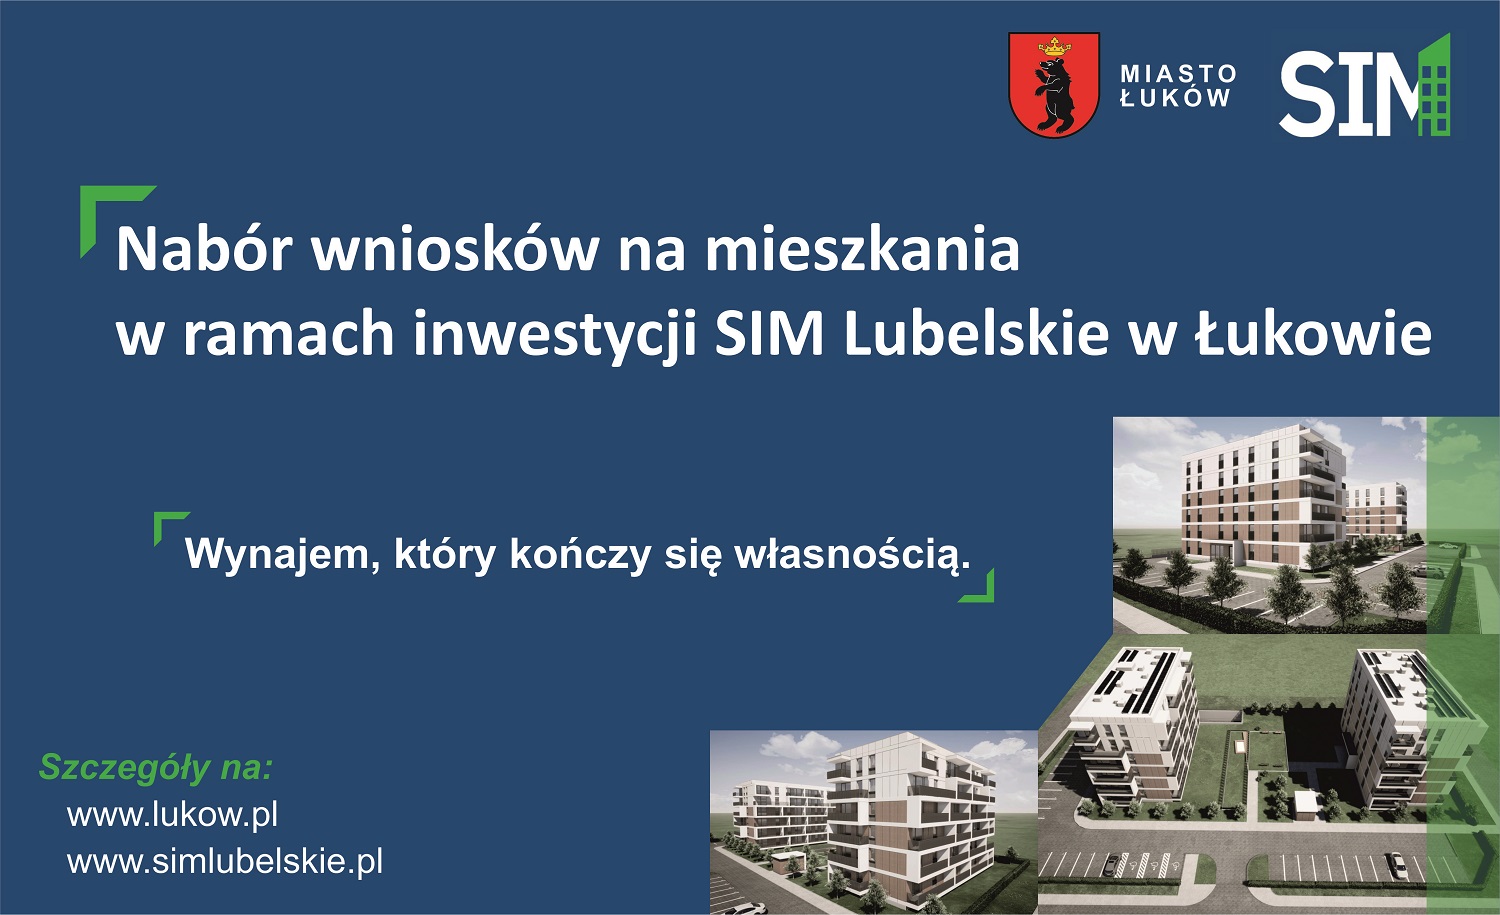 Nabór wniosków na mieszkania w ramach inwestycji SIM Lubelskie